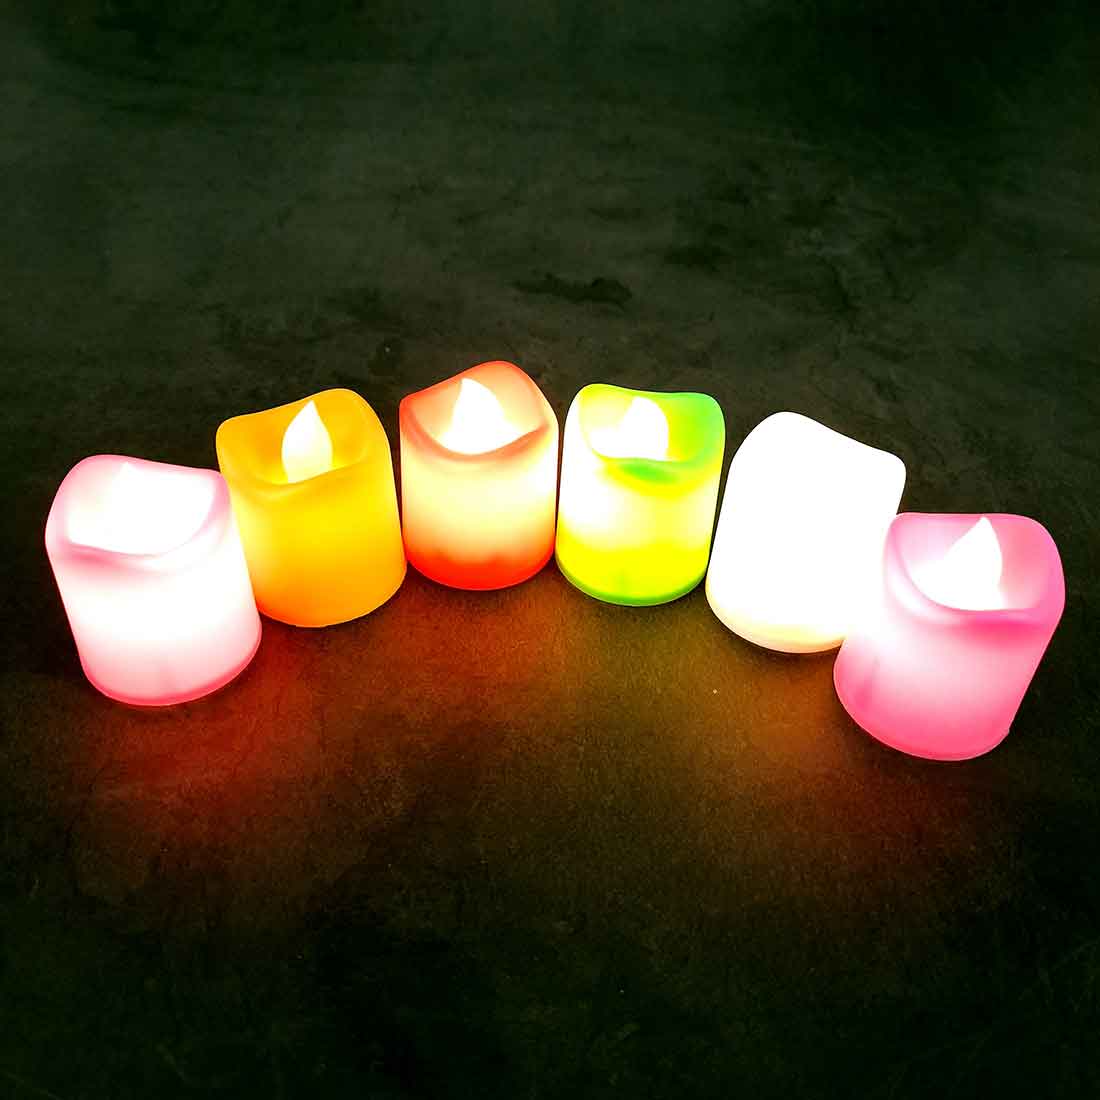 LED Candle - For Home Decor & Diwali Decoration -Set of 6 - ApkaMart